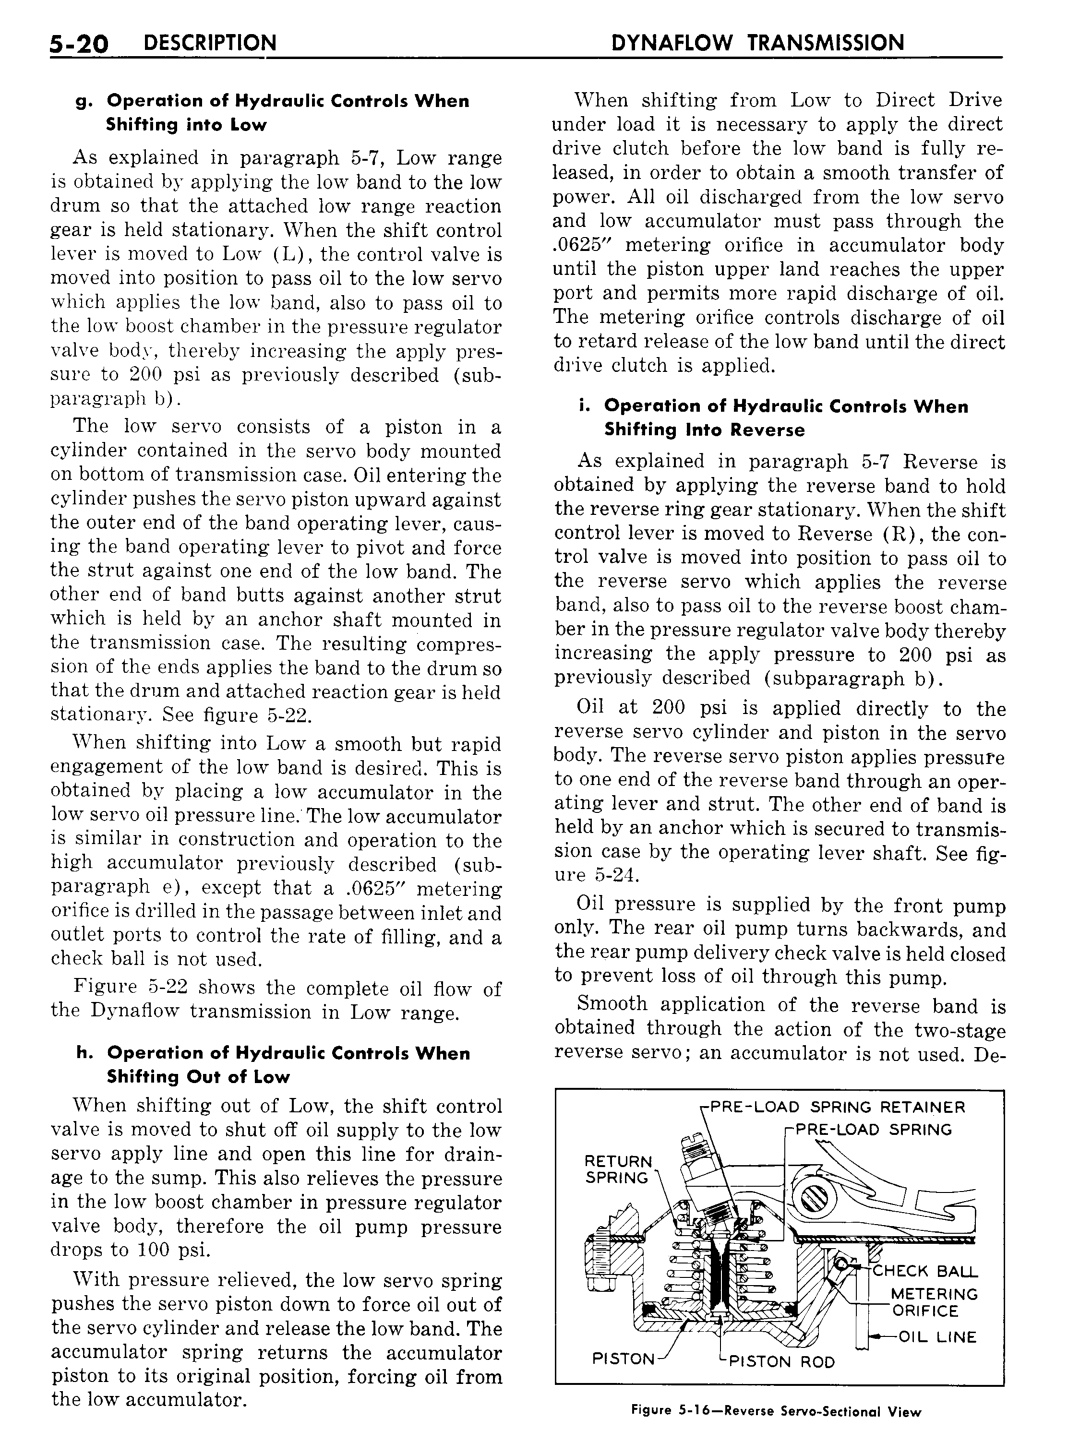 n_06 1957 Buick Shop Manual - Dynaflow-020-020.jpg